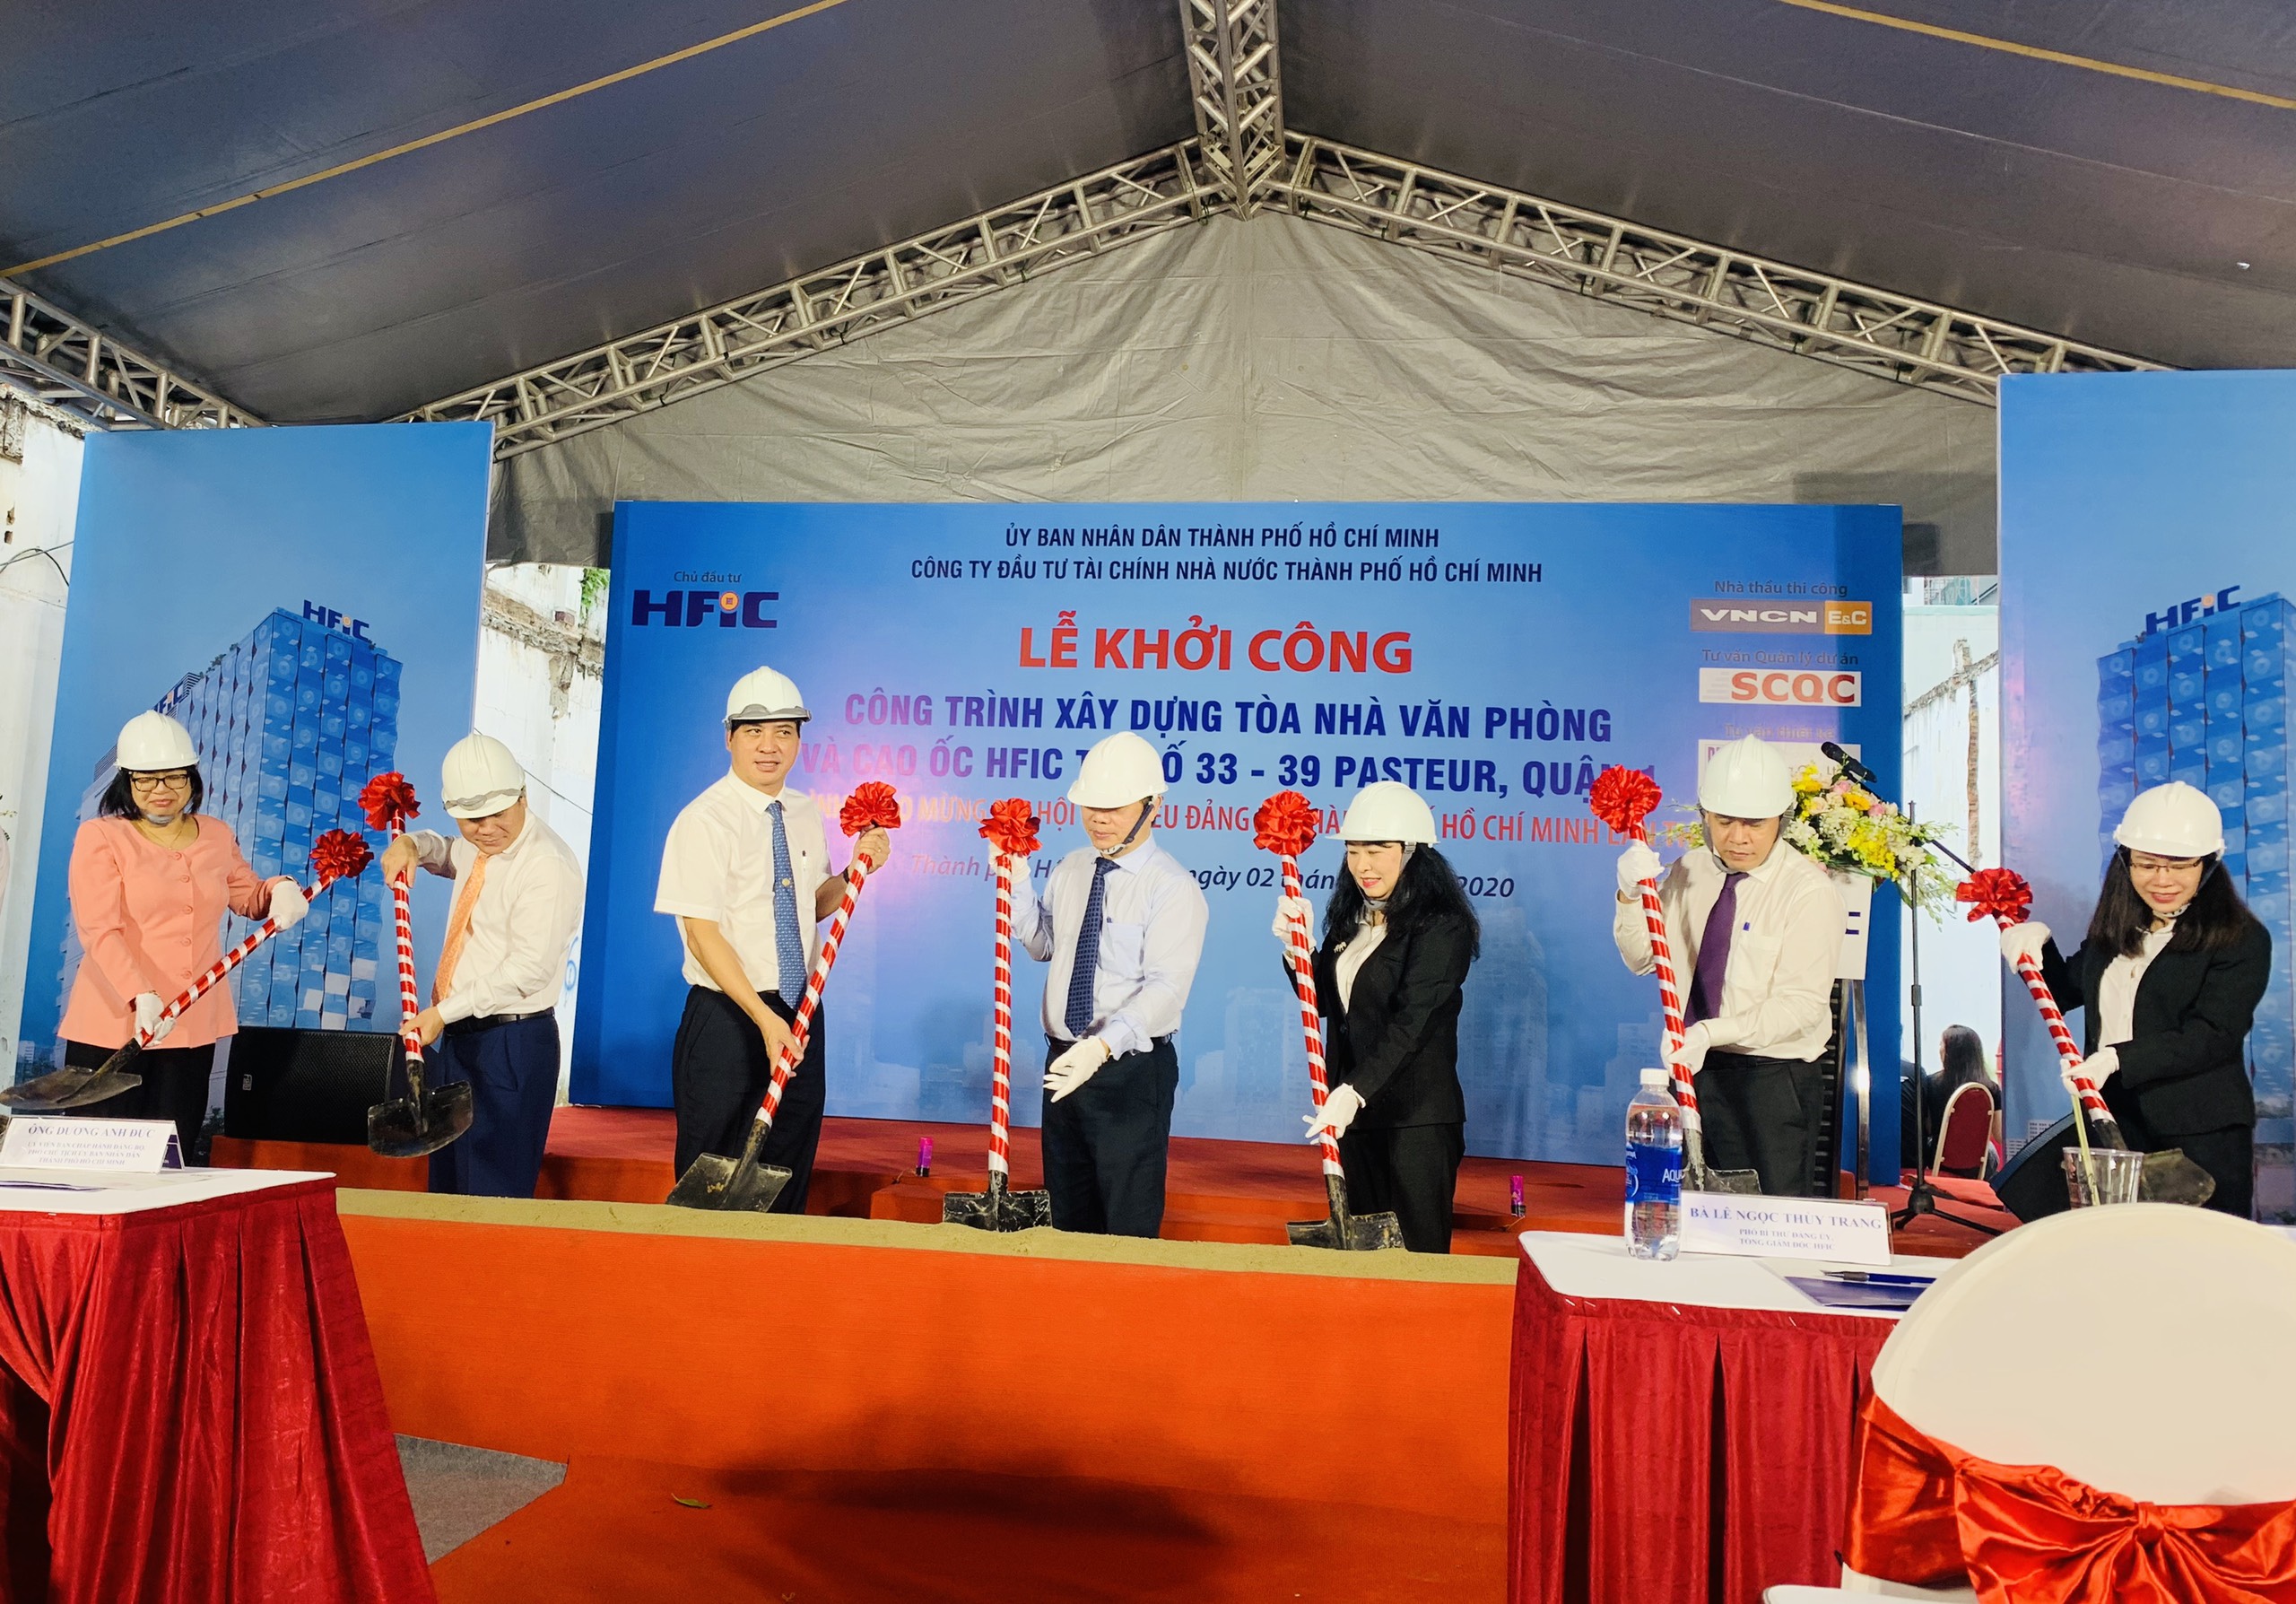 Phó Chủ tịch UBND TP Hồ Chí Minh Dương Anh Đức và các đại biểu thực hiện nghi thức động thổ công trình.